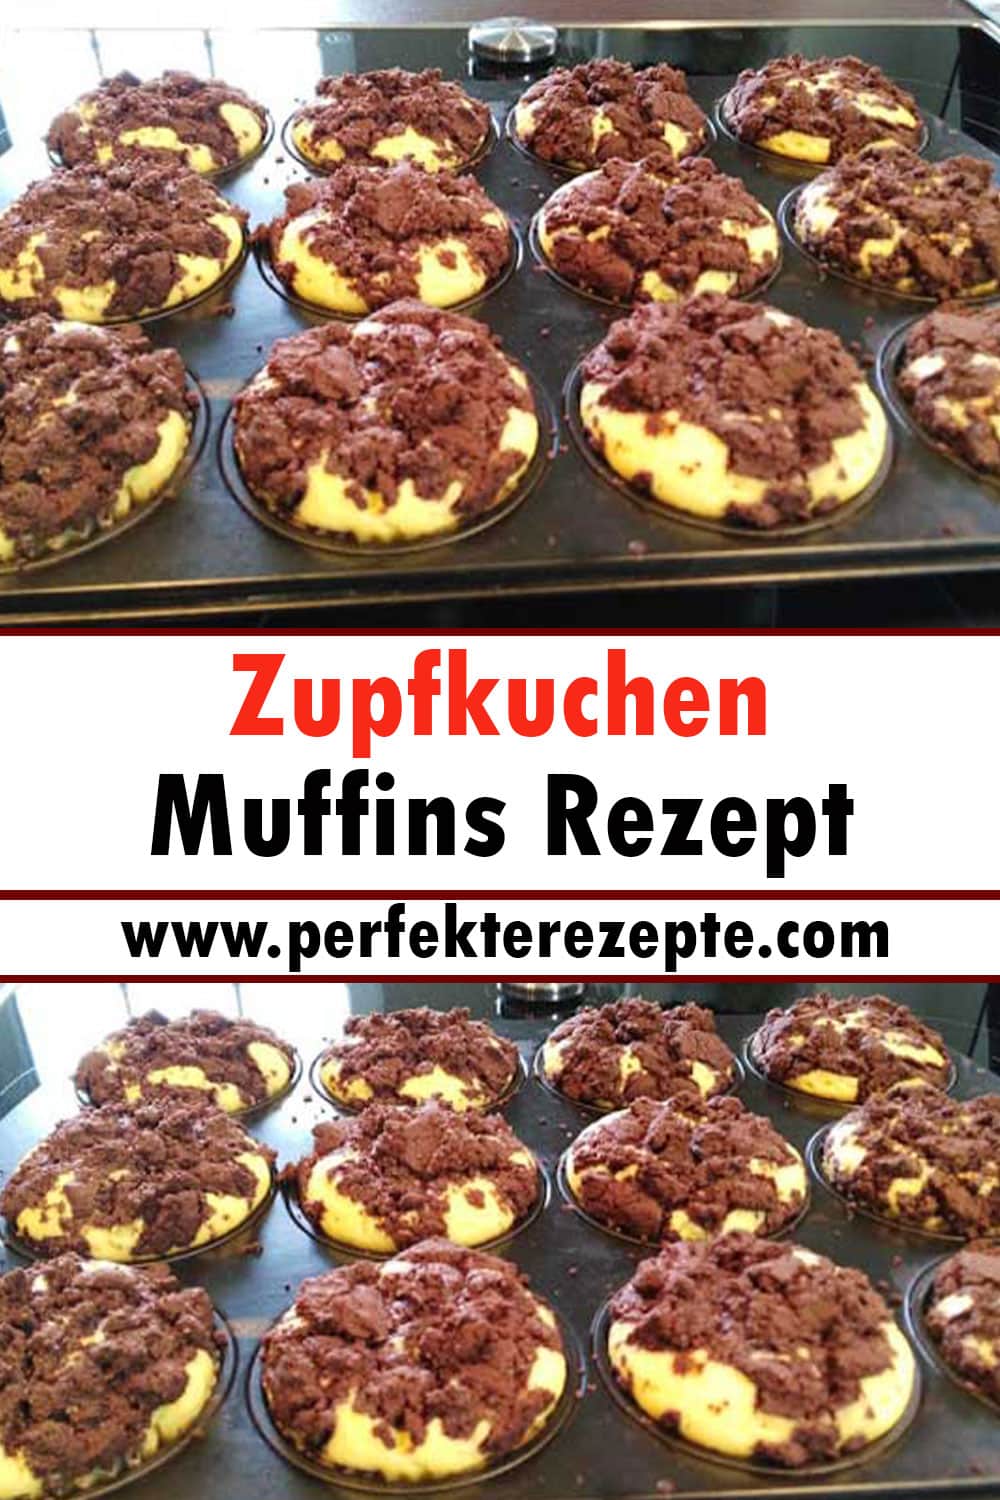 Zupfkuchen Muffins Rezept